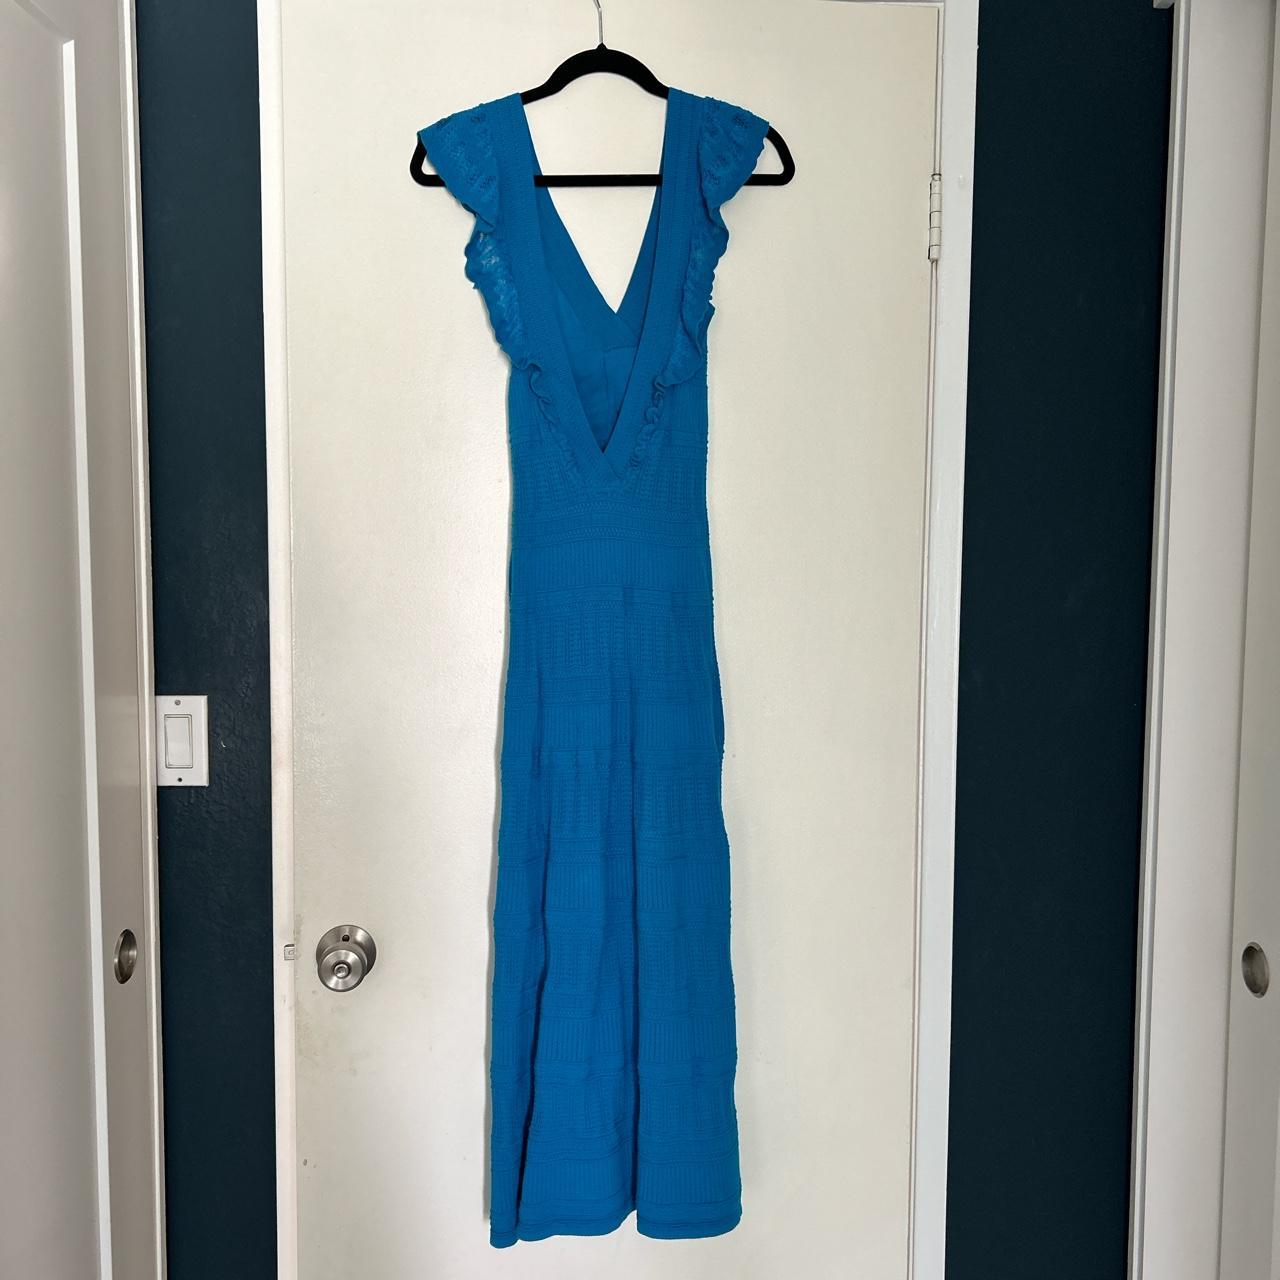 Sezane Aphrodite dress Caribbean Blue - worn 1x for... - Depop